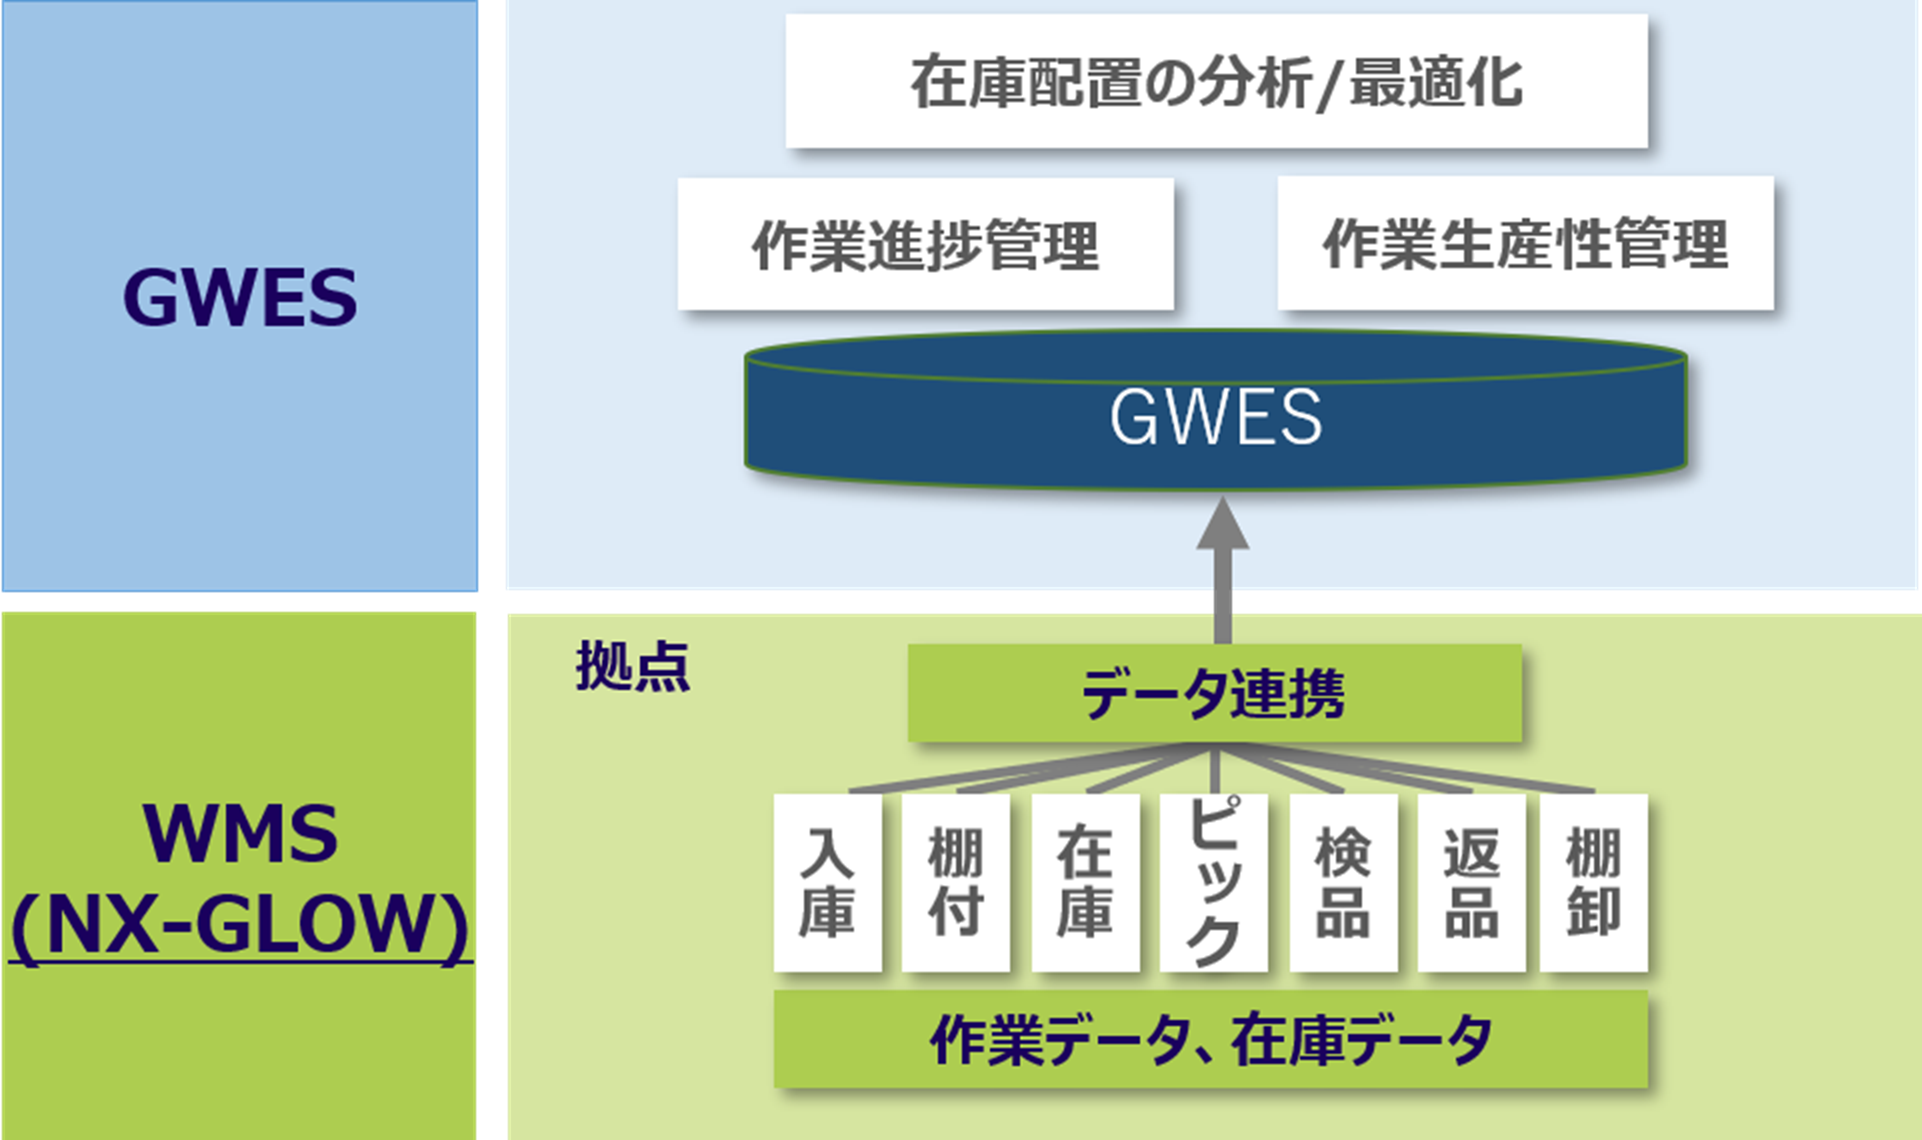 図1　NXグループのグローバル標準倉庫管理システム『NX-GLOW』＋『GWES』連携概念図